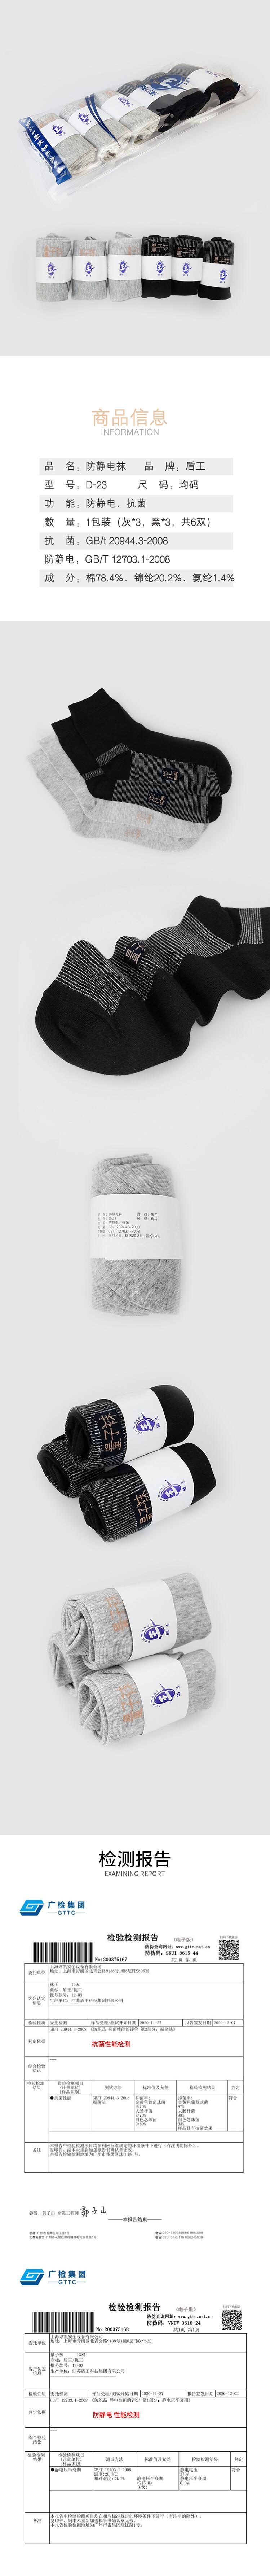 盾王D-23抗菌棉质长筒防静电袜子图片